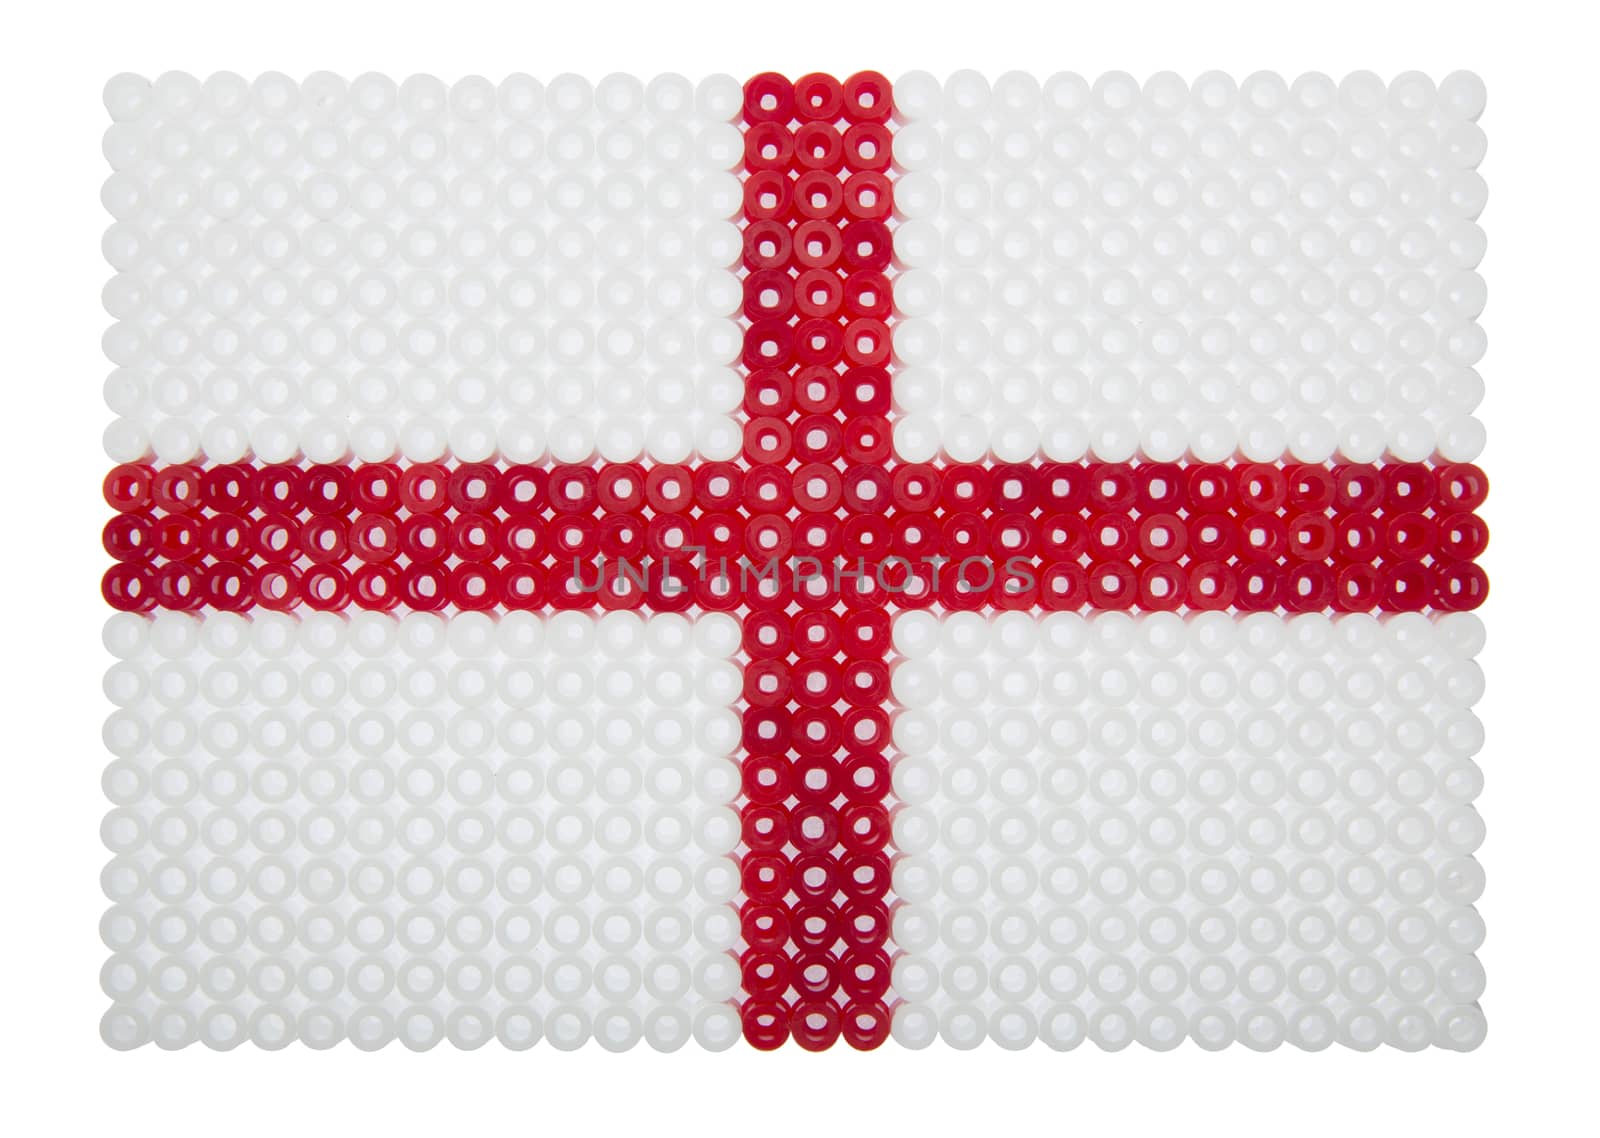 Flag of England by gemenacom